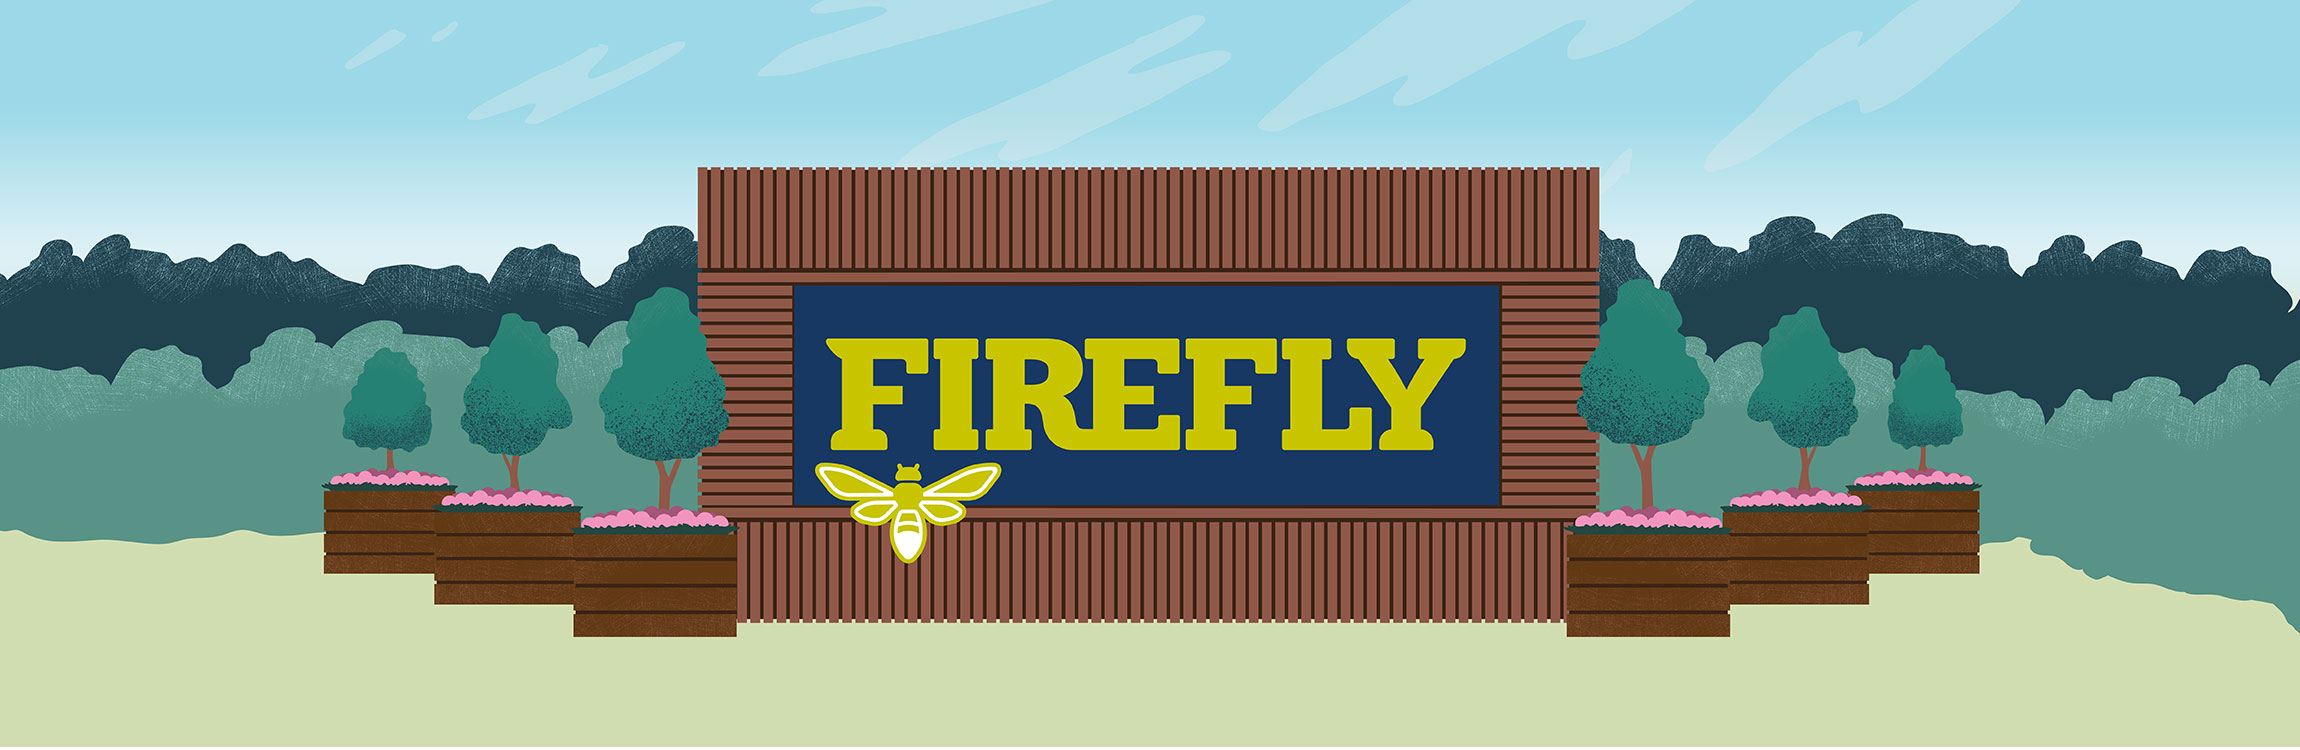 2020 Firefly Music Festival June 18 21 In Dover, Delaware